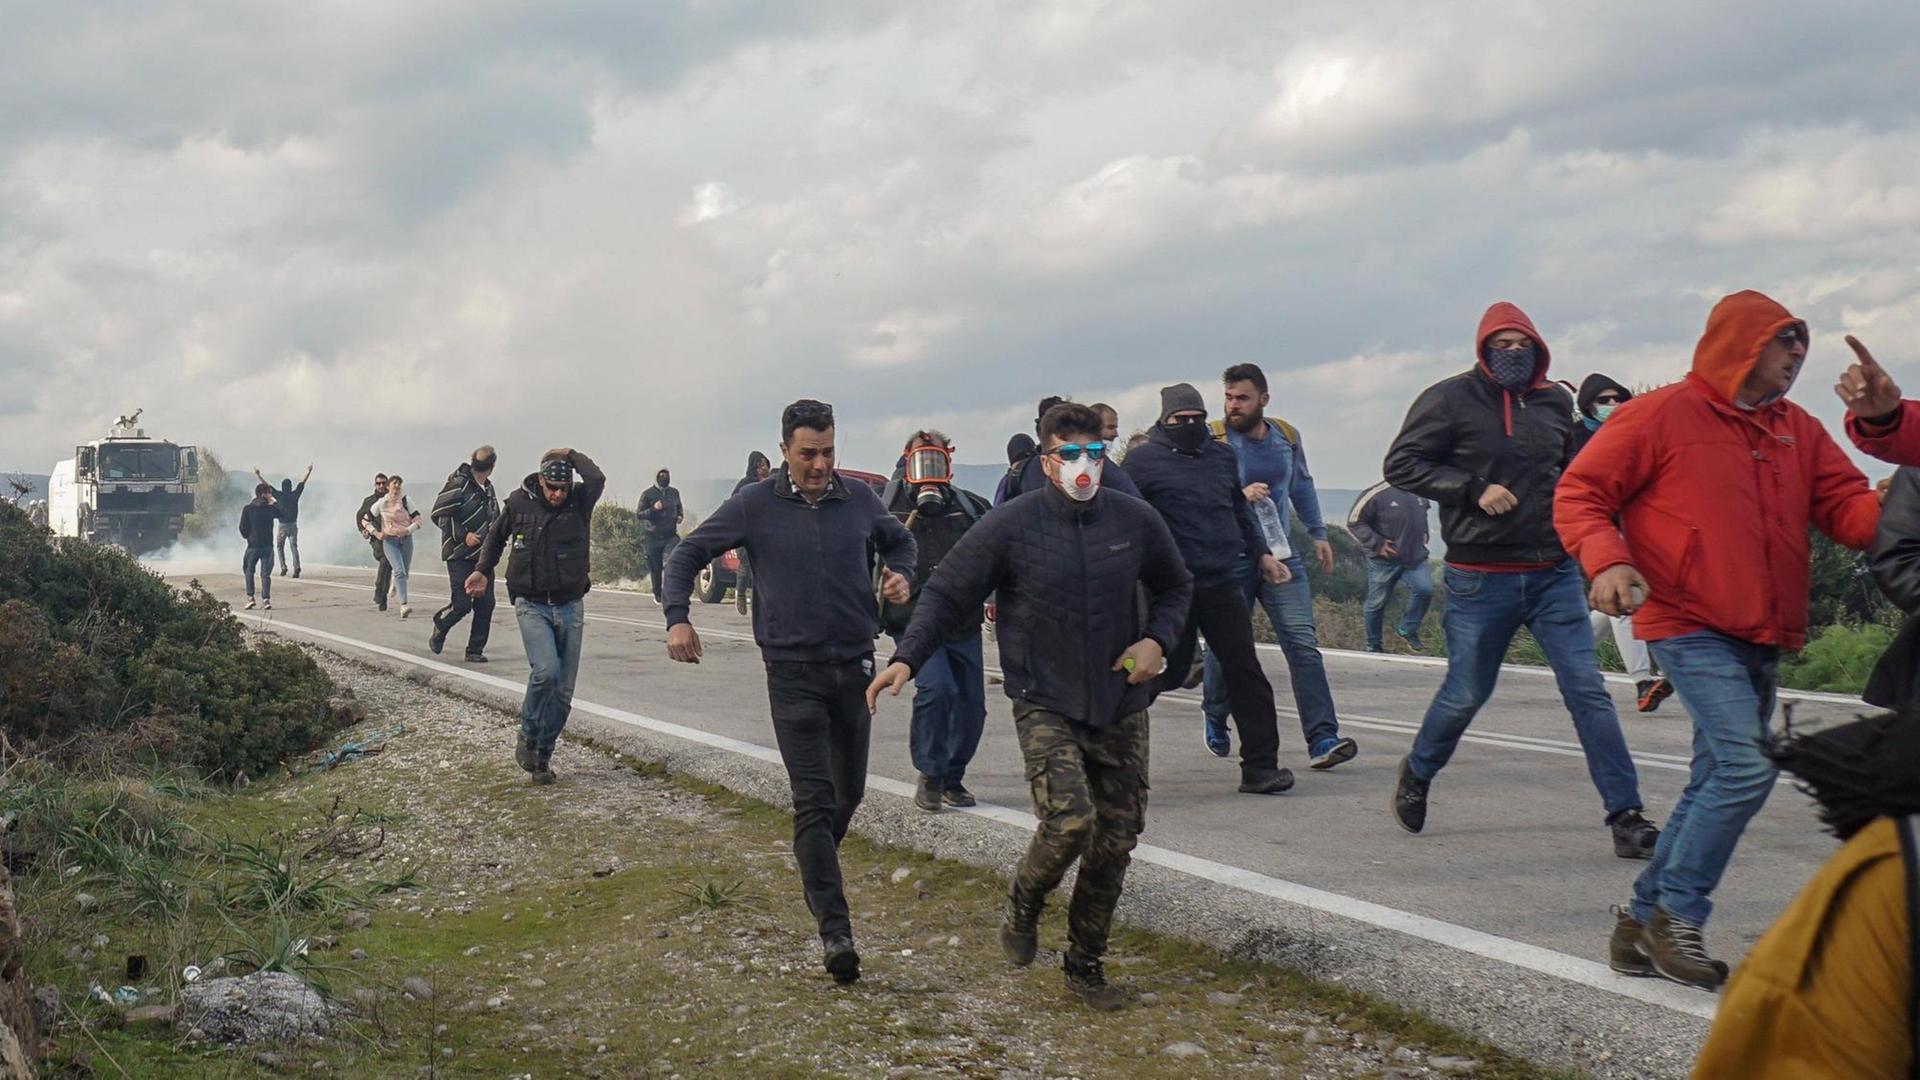 Demonstrierende rennen auf der Insel Lesobos eine Straße entlang, nachdem die Polizei Tränengas eingesetzt hat.